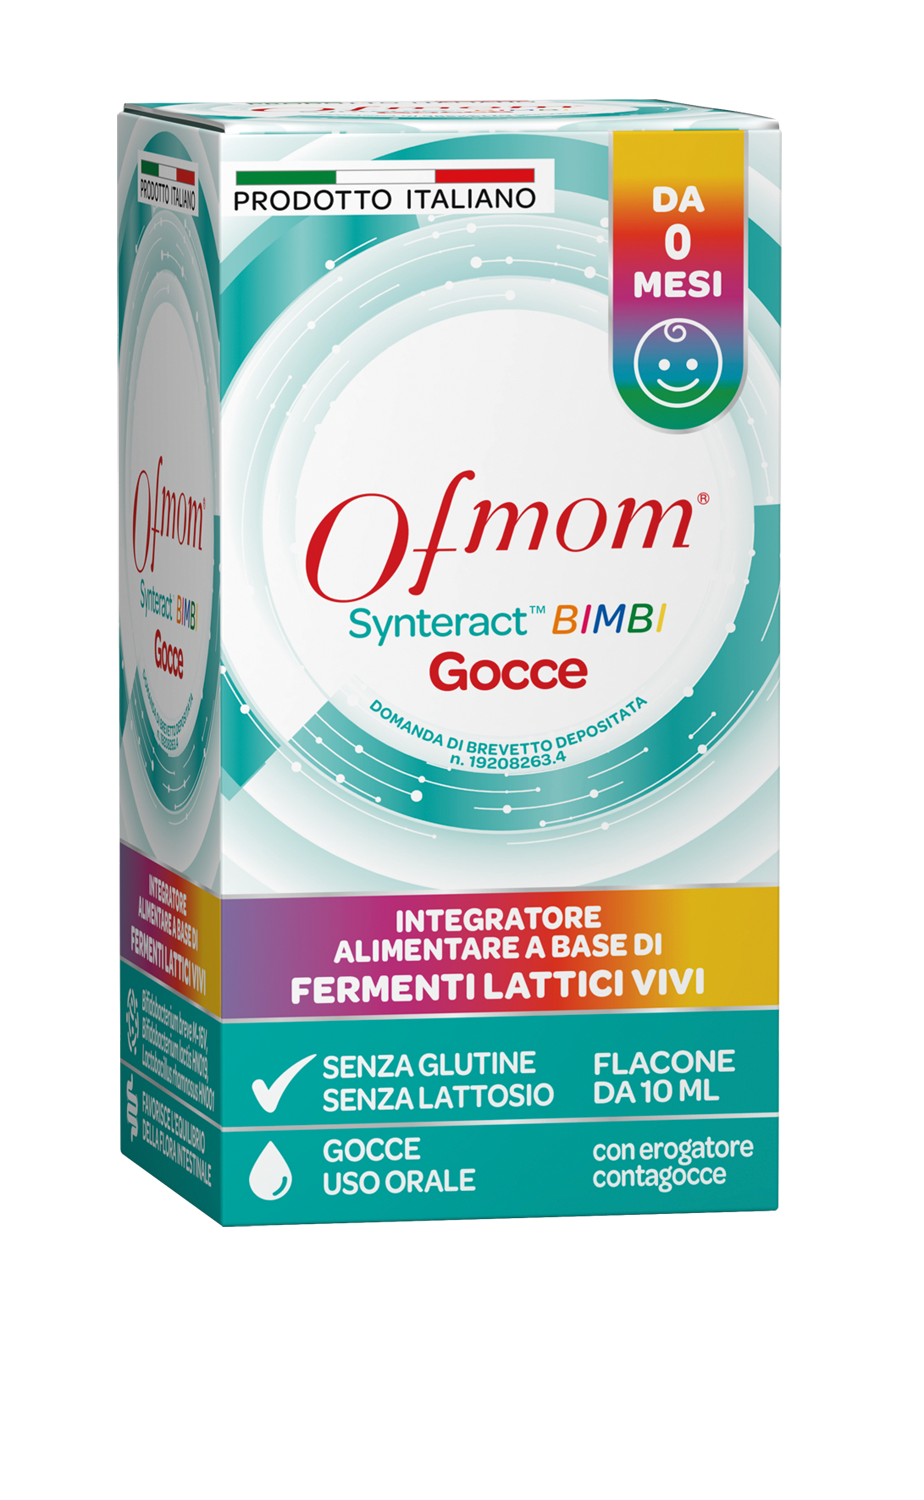 Da Ofmom SynterActTM BIMBI il primo integratore alimentare per bambini inodore, incolore adatto anche a intolleranti o allergici a lattosio e glutine